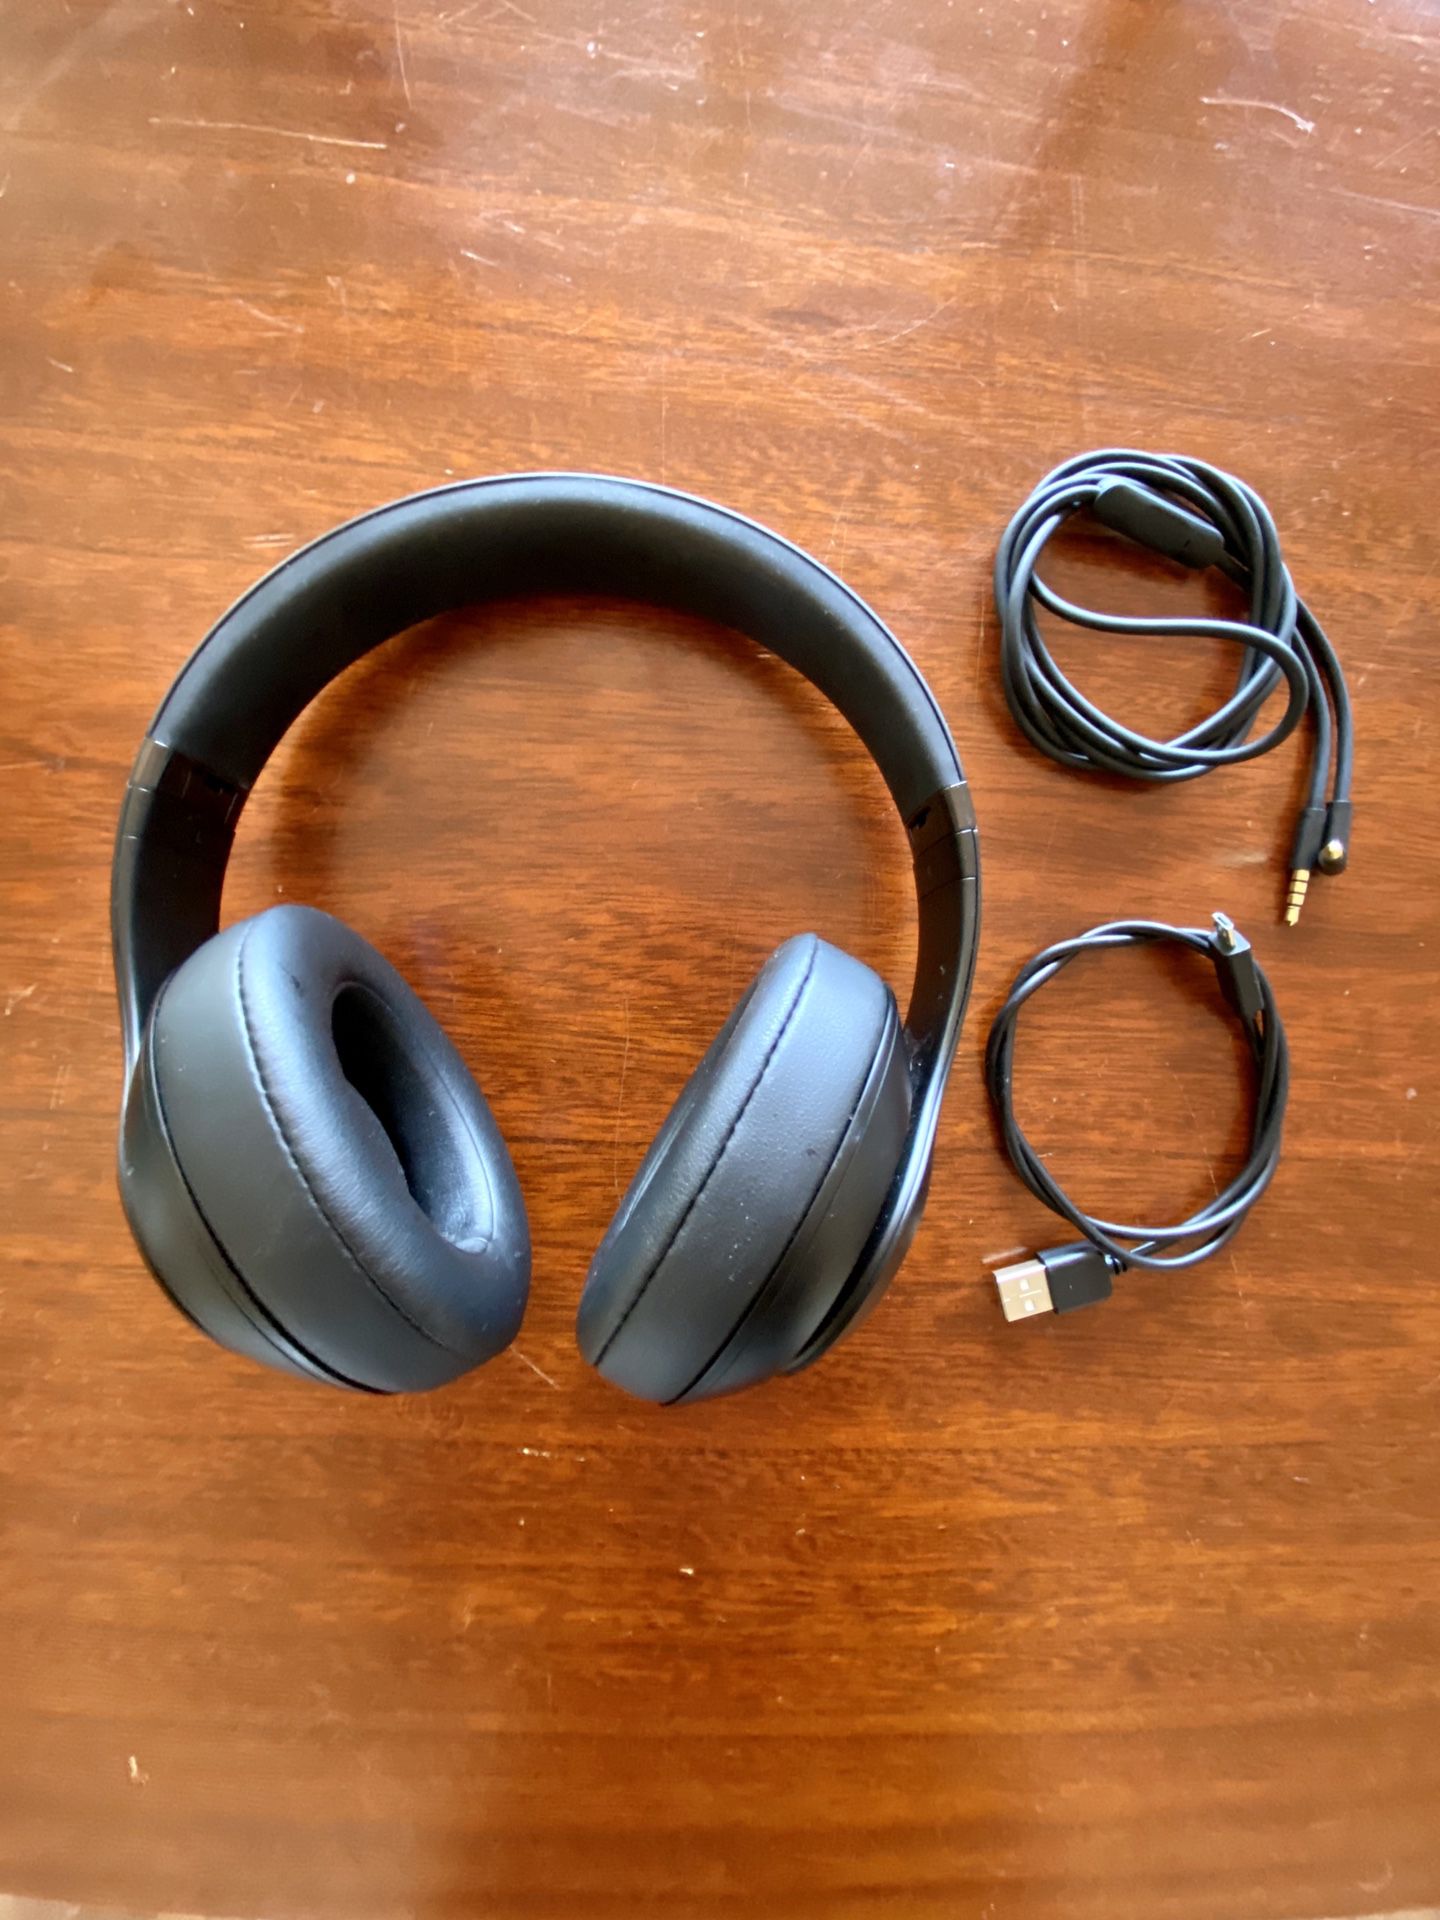 Beats Studio3 Wireless Over-Ear Headphones - Matte Black